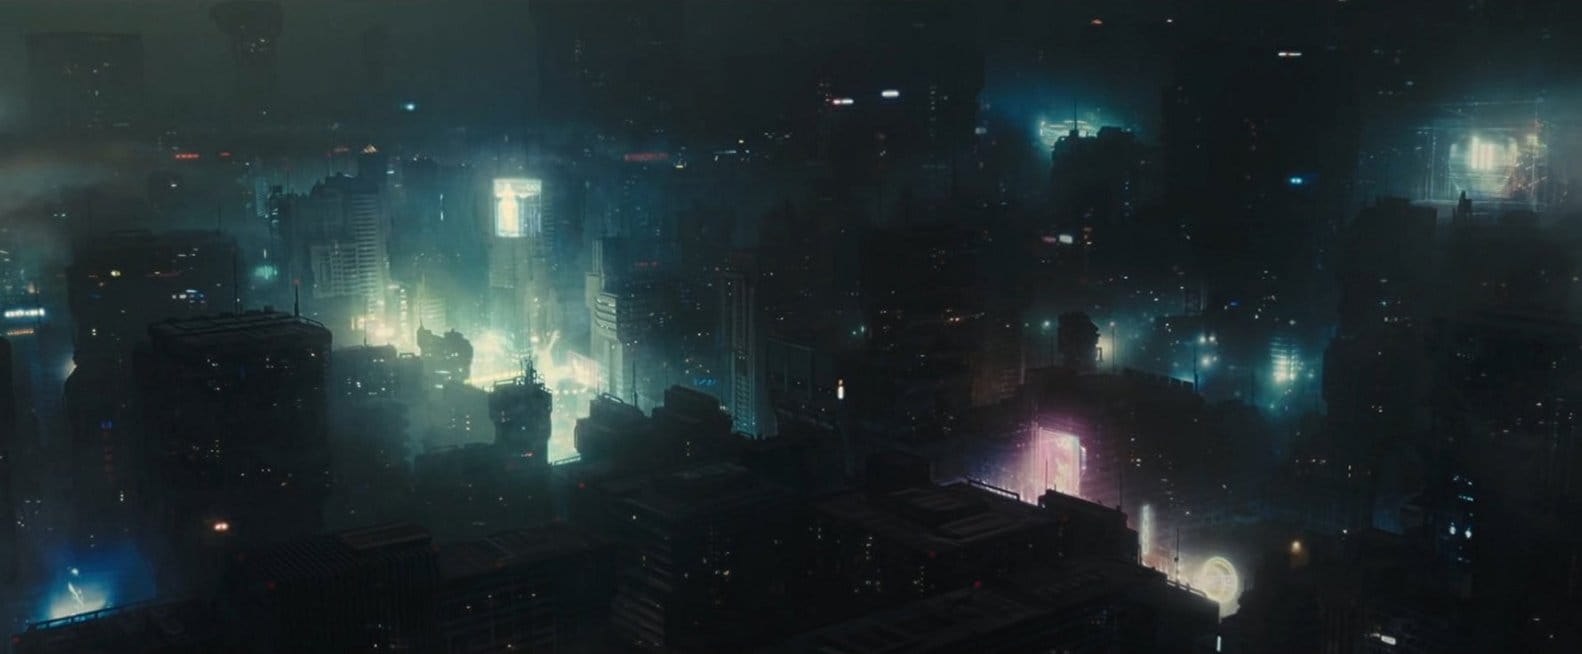 Não há muita especificidade na arquitetura de Los Angeles no Blade Runner 2049. Imagem © 2017 Warner Bros. Entertainment Inc. 